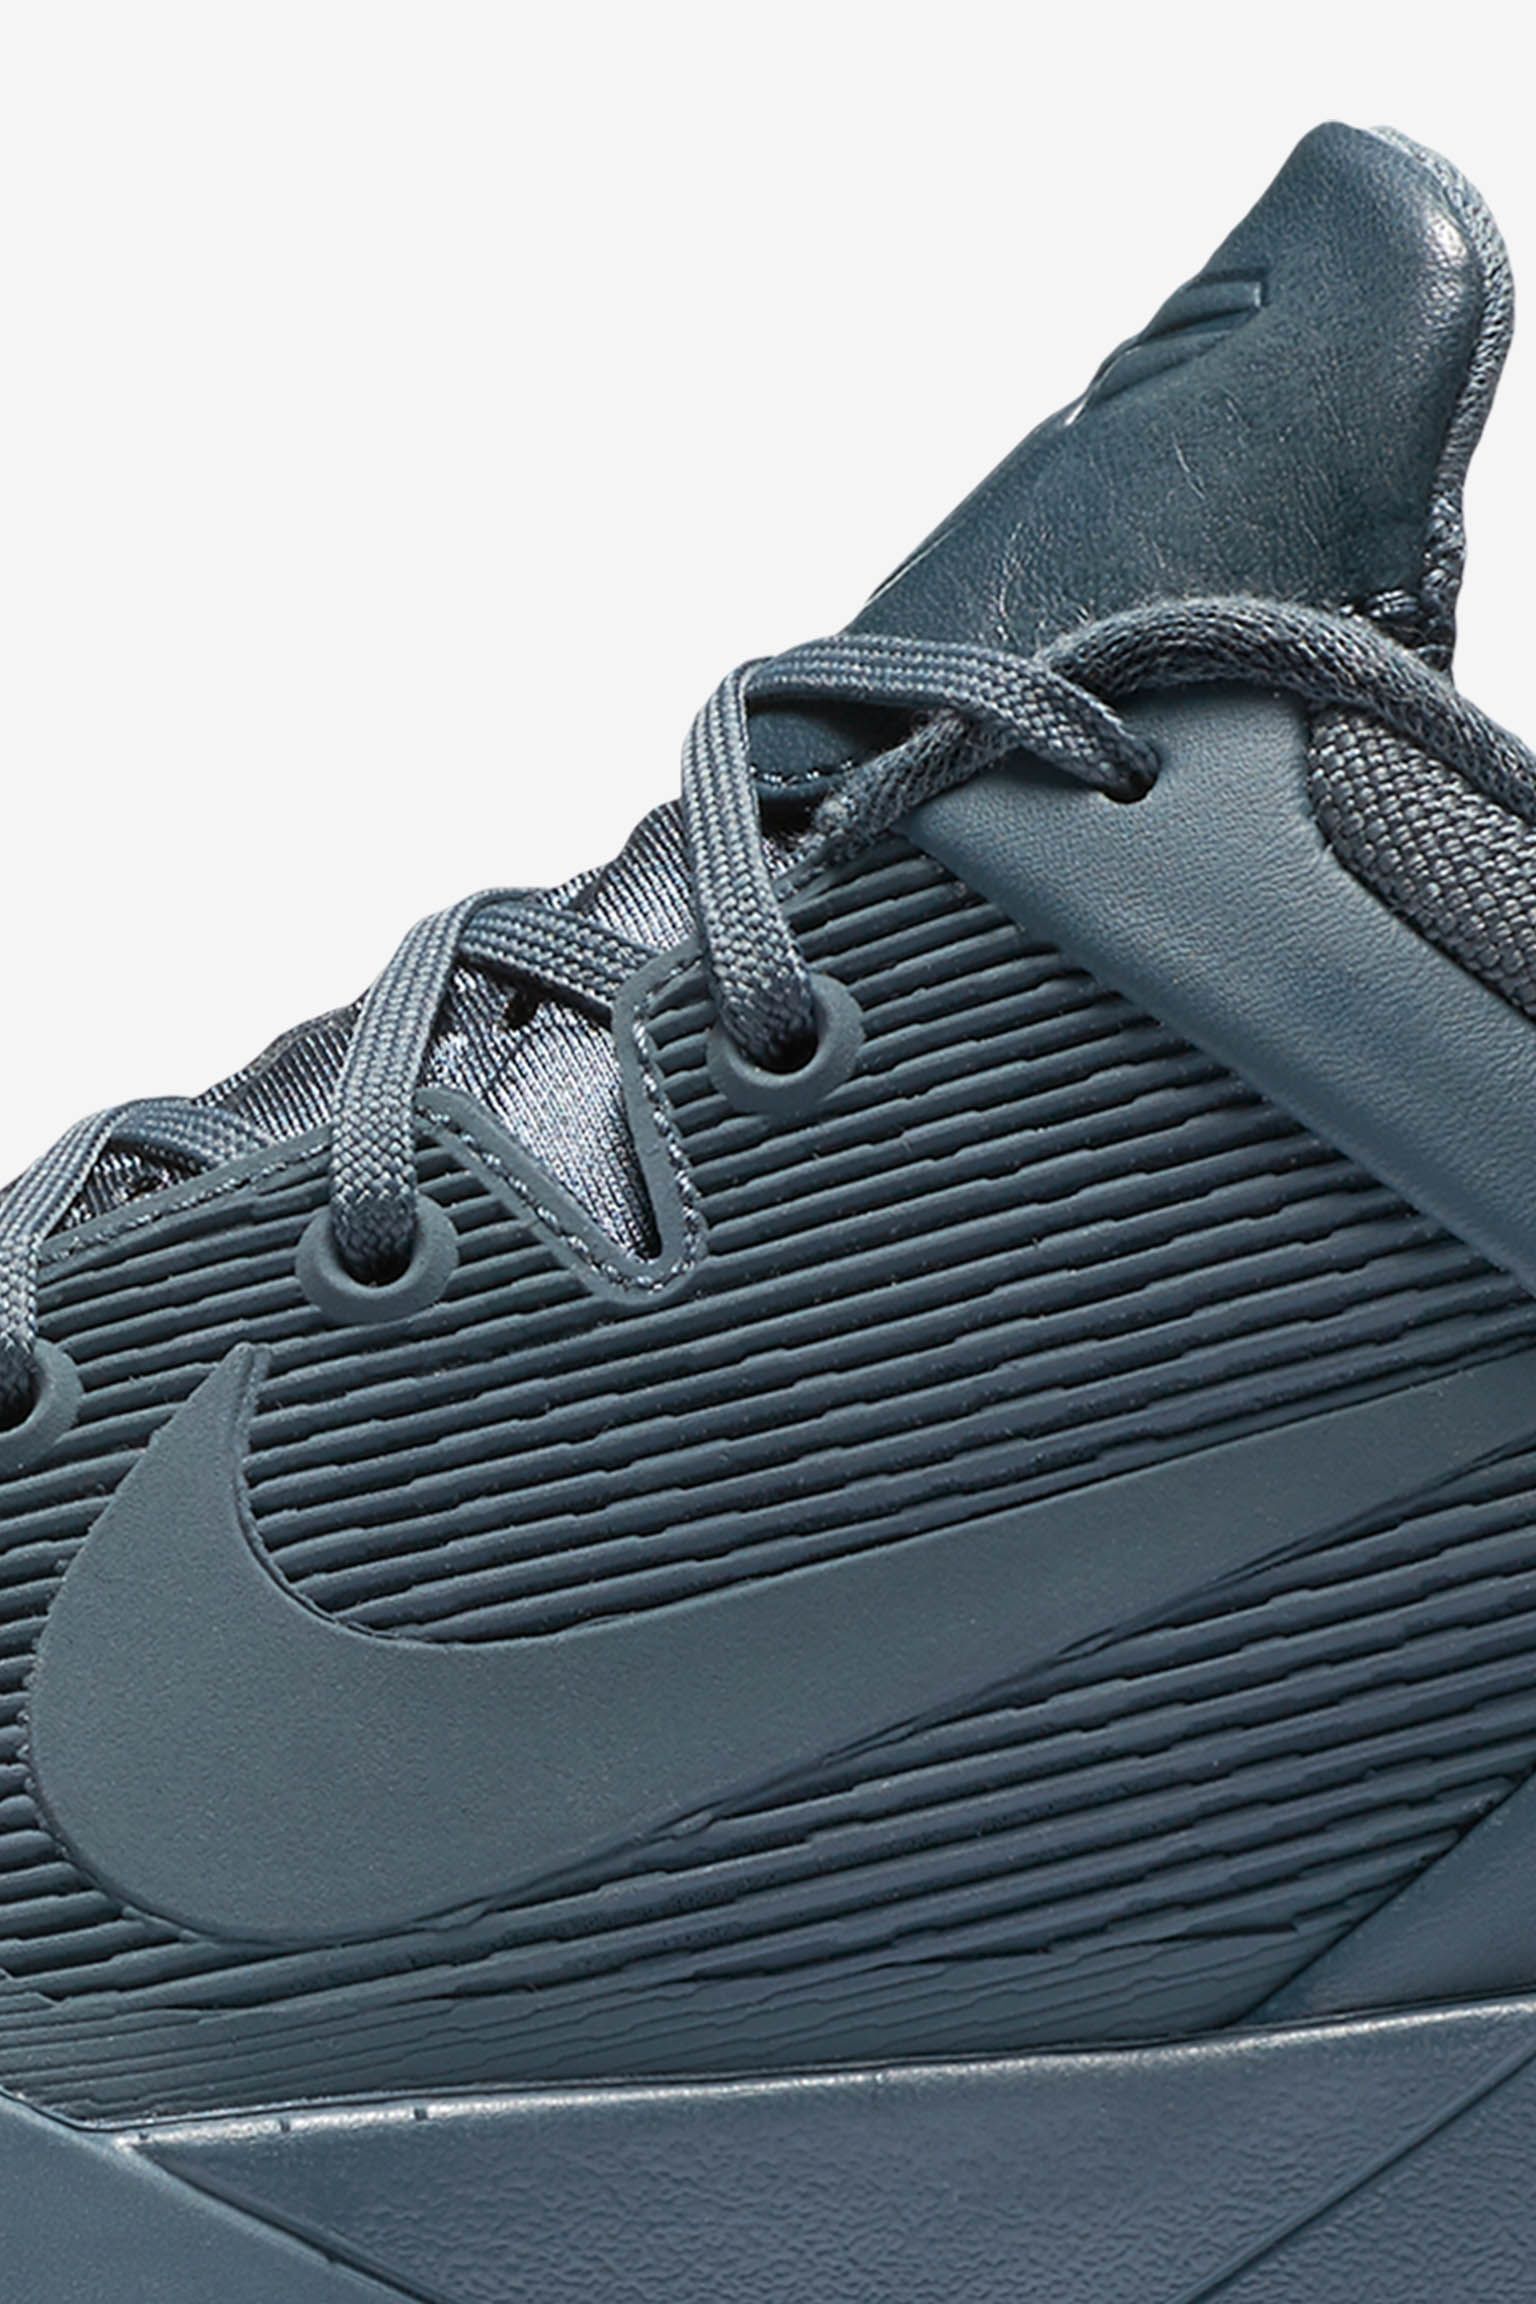 Nike Kobe 7 'Black Mamba' Release Date. Nike SNKRS